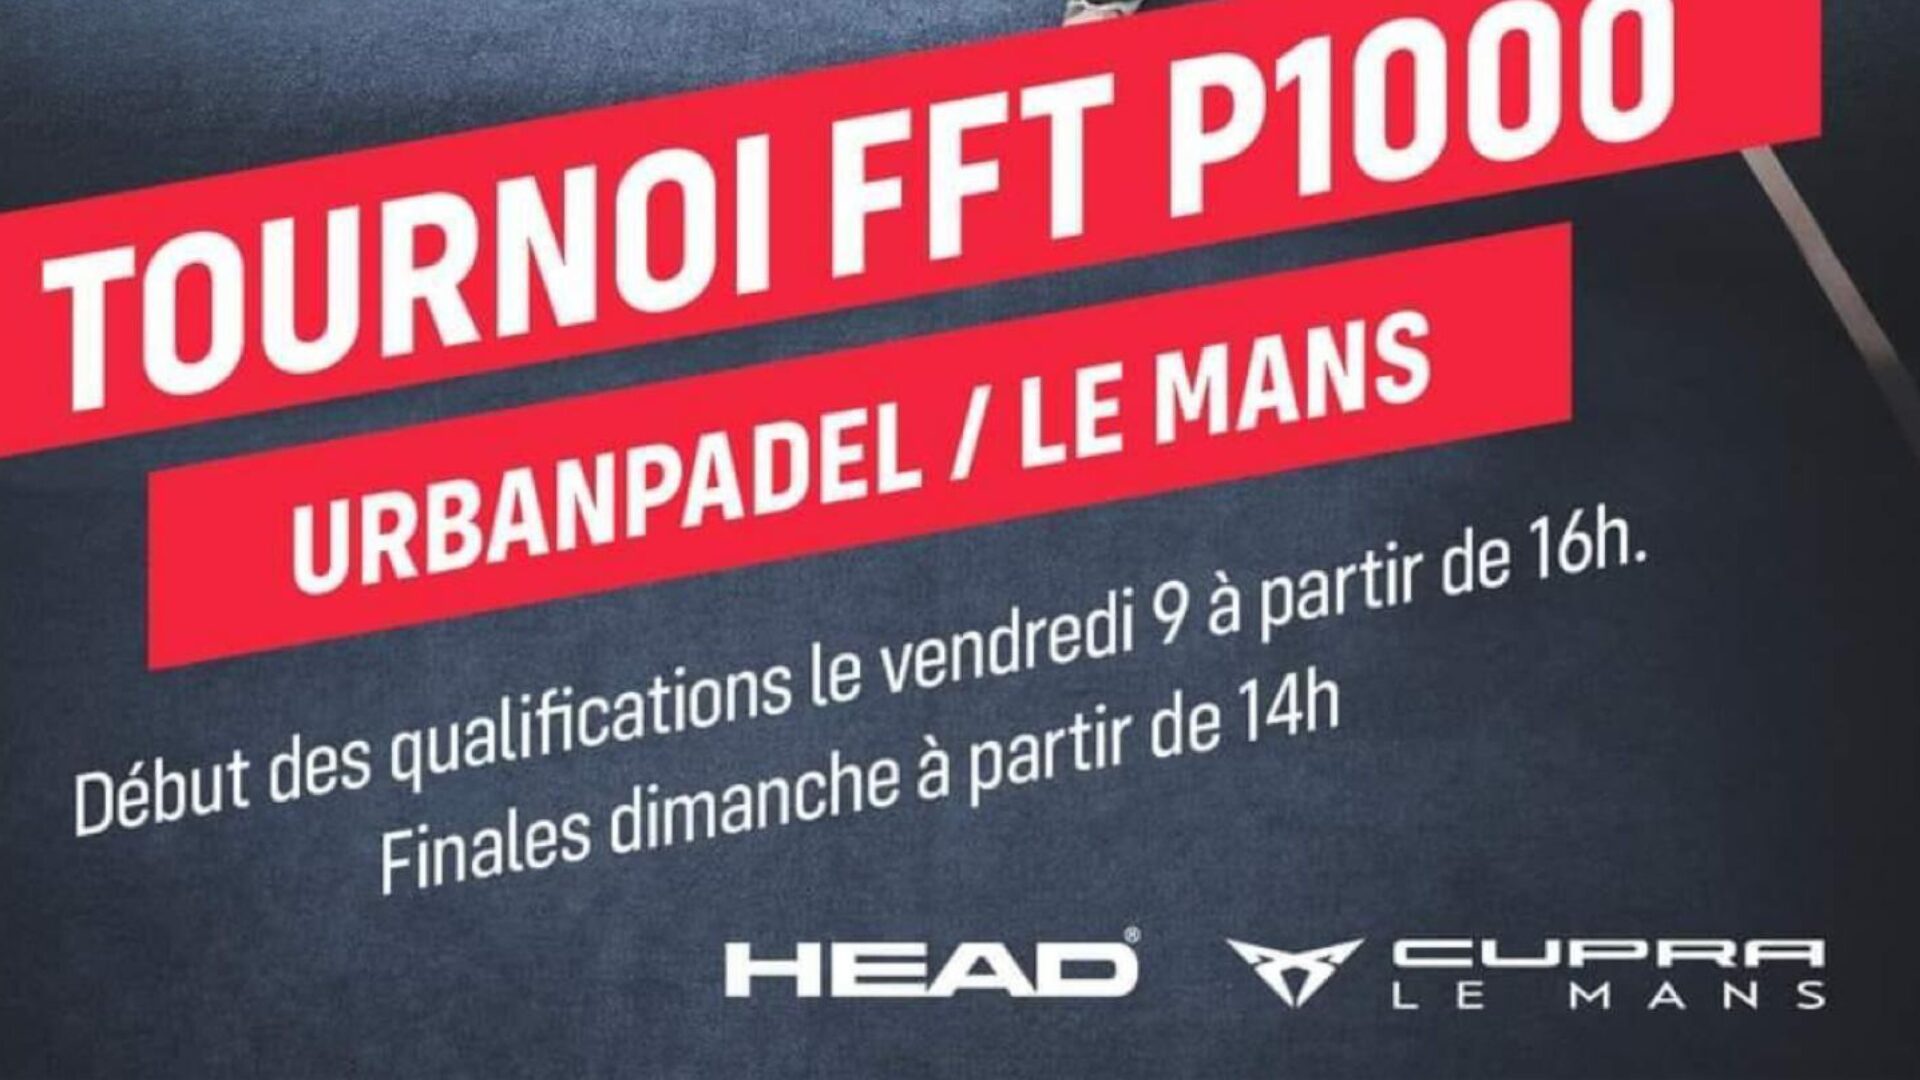 URBANPadel Le Mans: il programma P1000